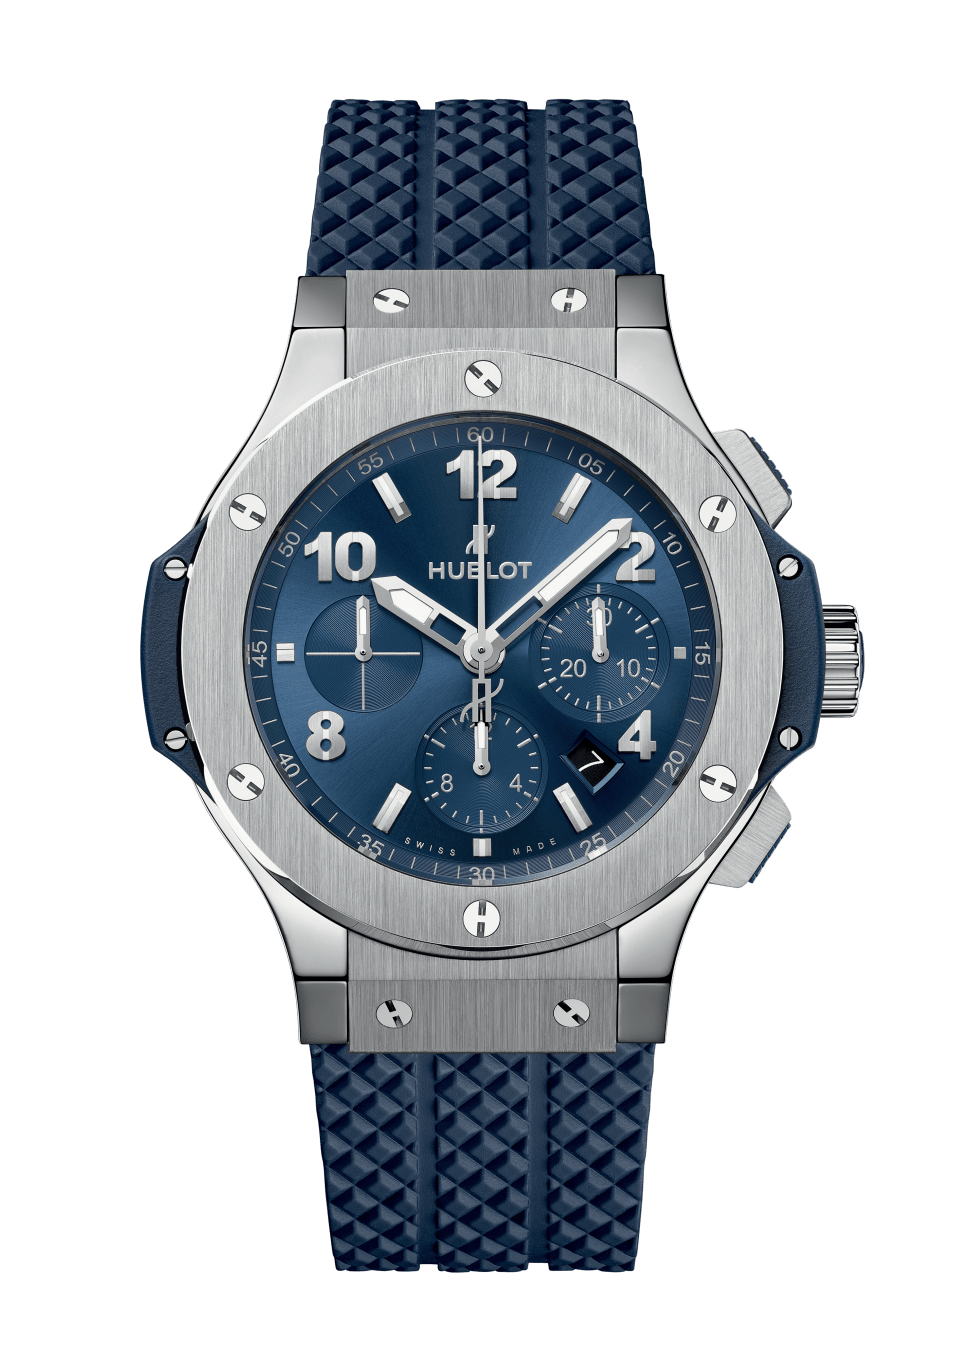 Men's watch / unisex  HUBLOT, Big Bang Original Steel Blue / 44mm, SKU: 301.SX.710.RX | watchphilosophy.co.uk